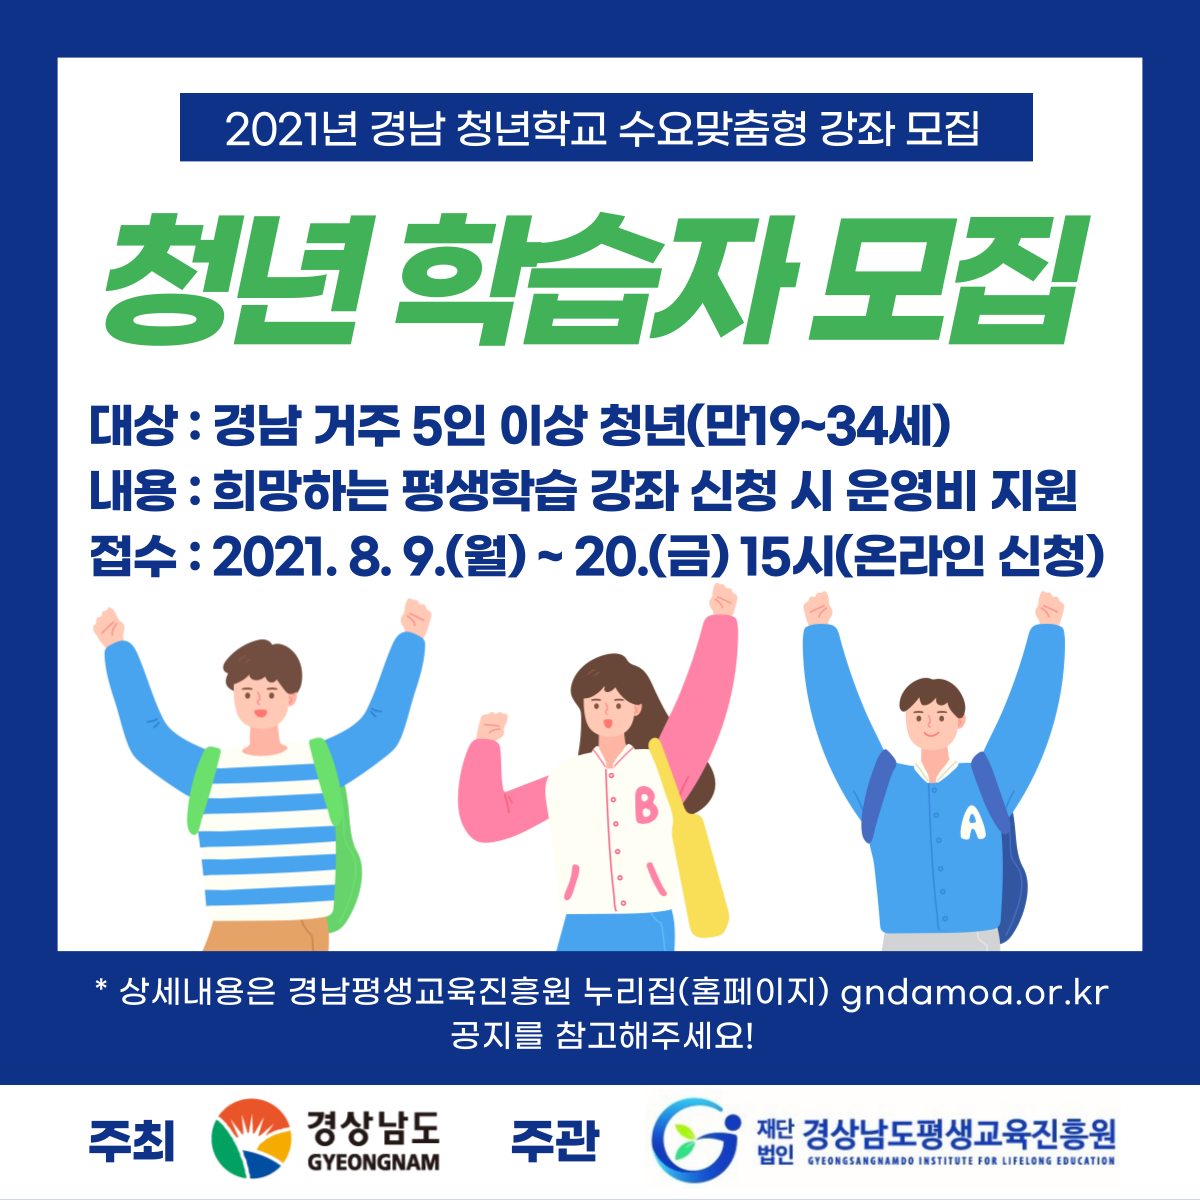 2021년 경남 청년학교 수요맞춤형 강좌 공모 안내 3